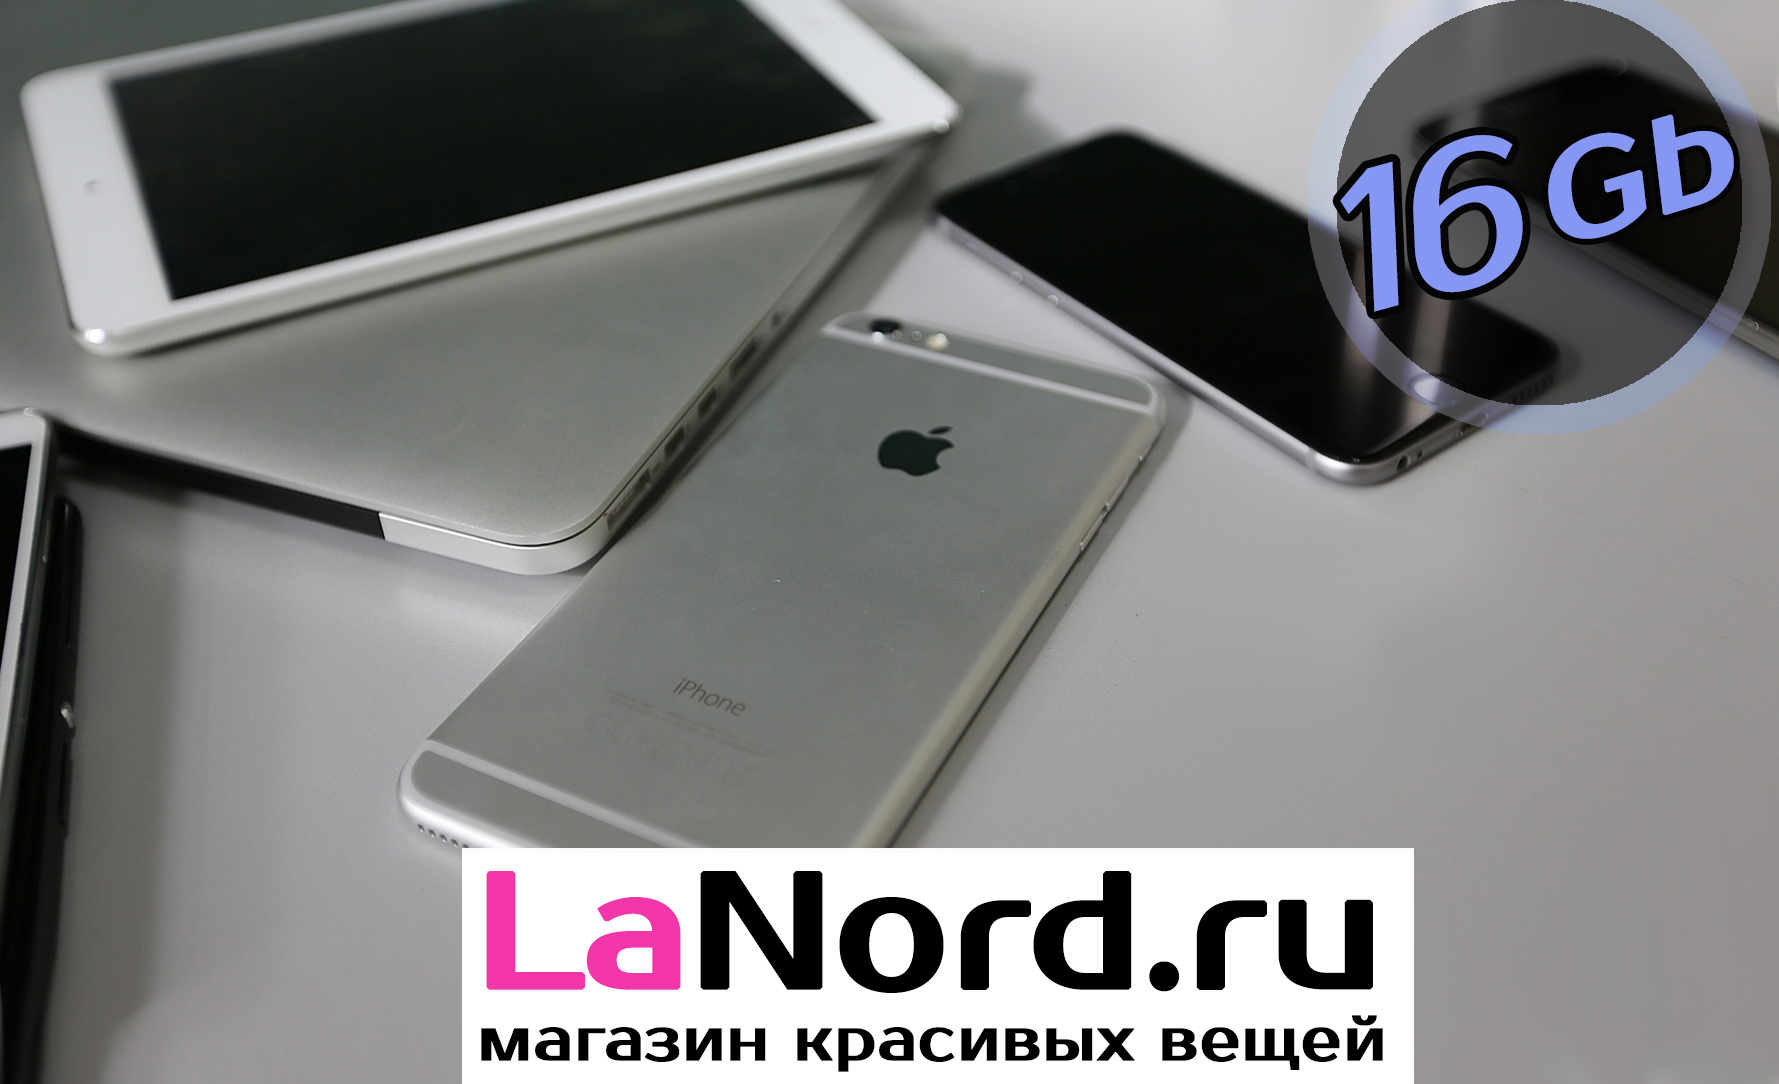 Apple iPhone 6 16GB Gray (серый) восстановленный